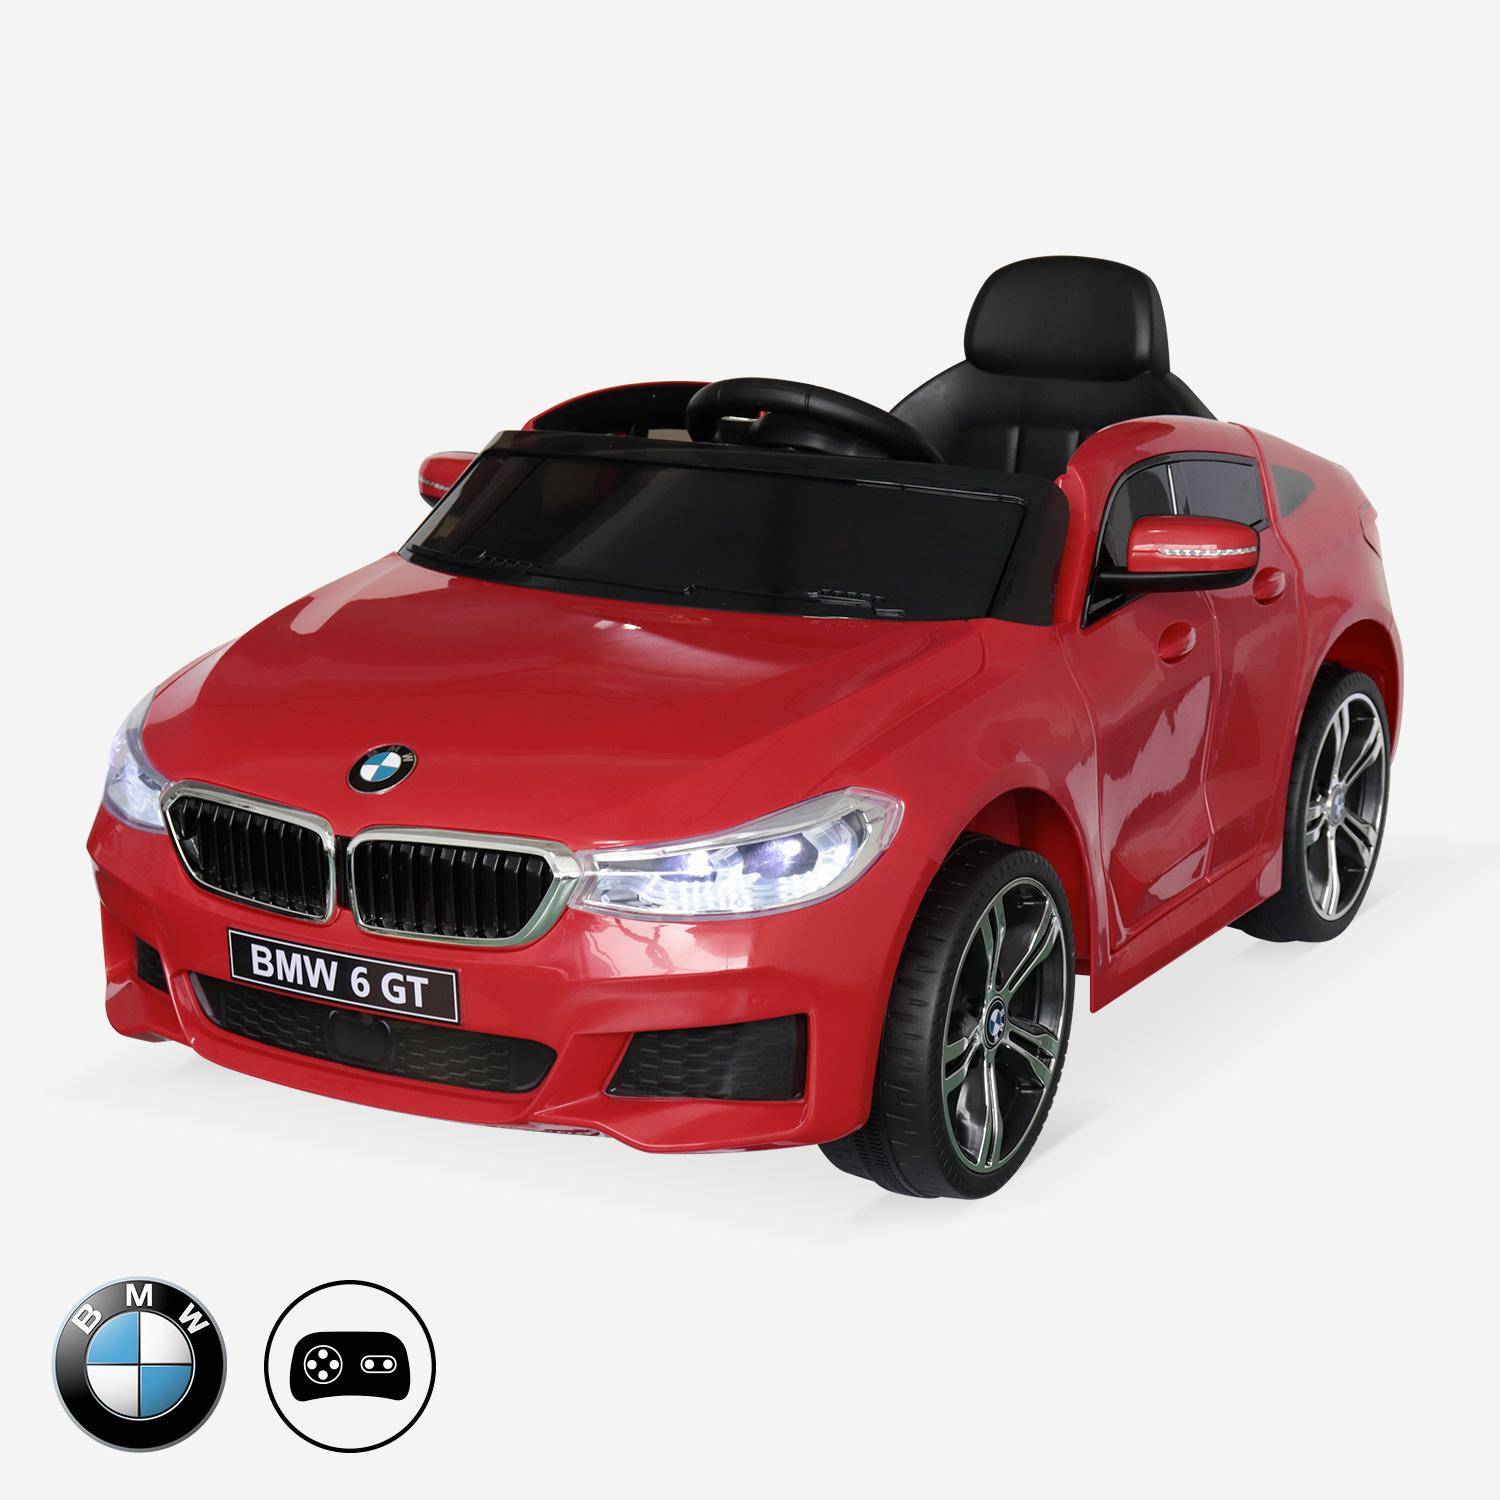 BMW GT6 Gran Turismo rood, elektrische auto 12V, 1 plaats, cabriolet voor kinderen met autoradio en afstandsbediening Photo1